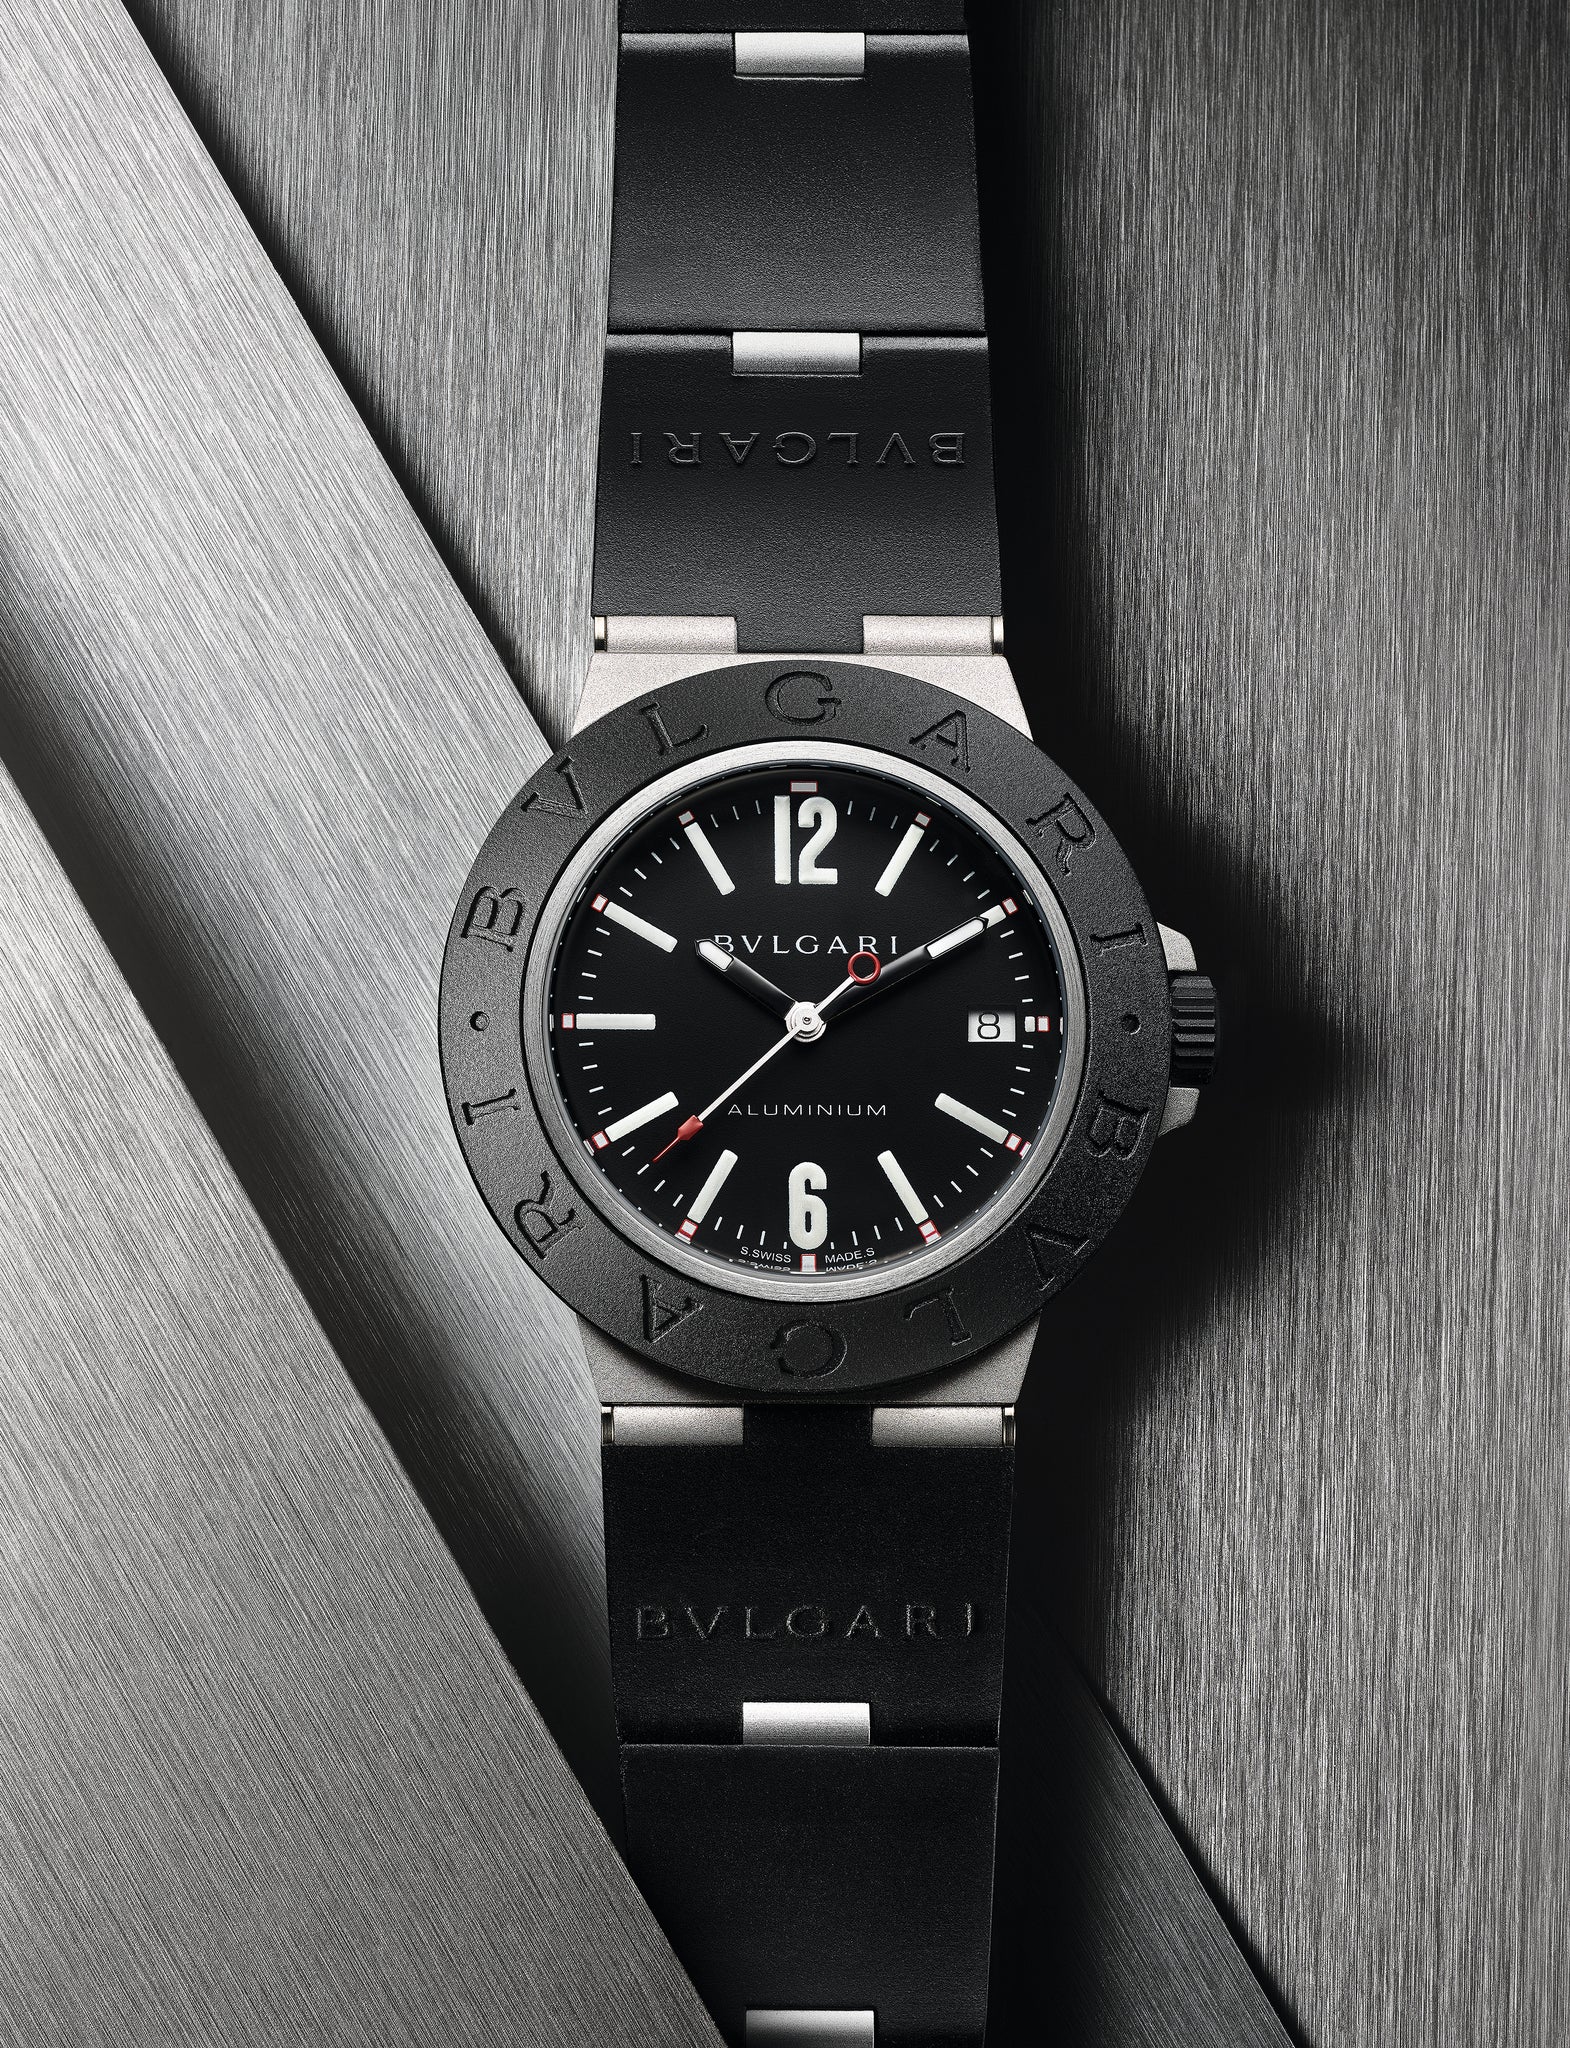 Bulgari Aluminium Watch - Watches